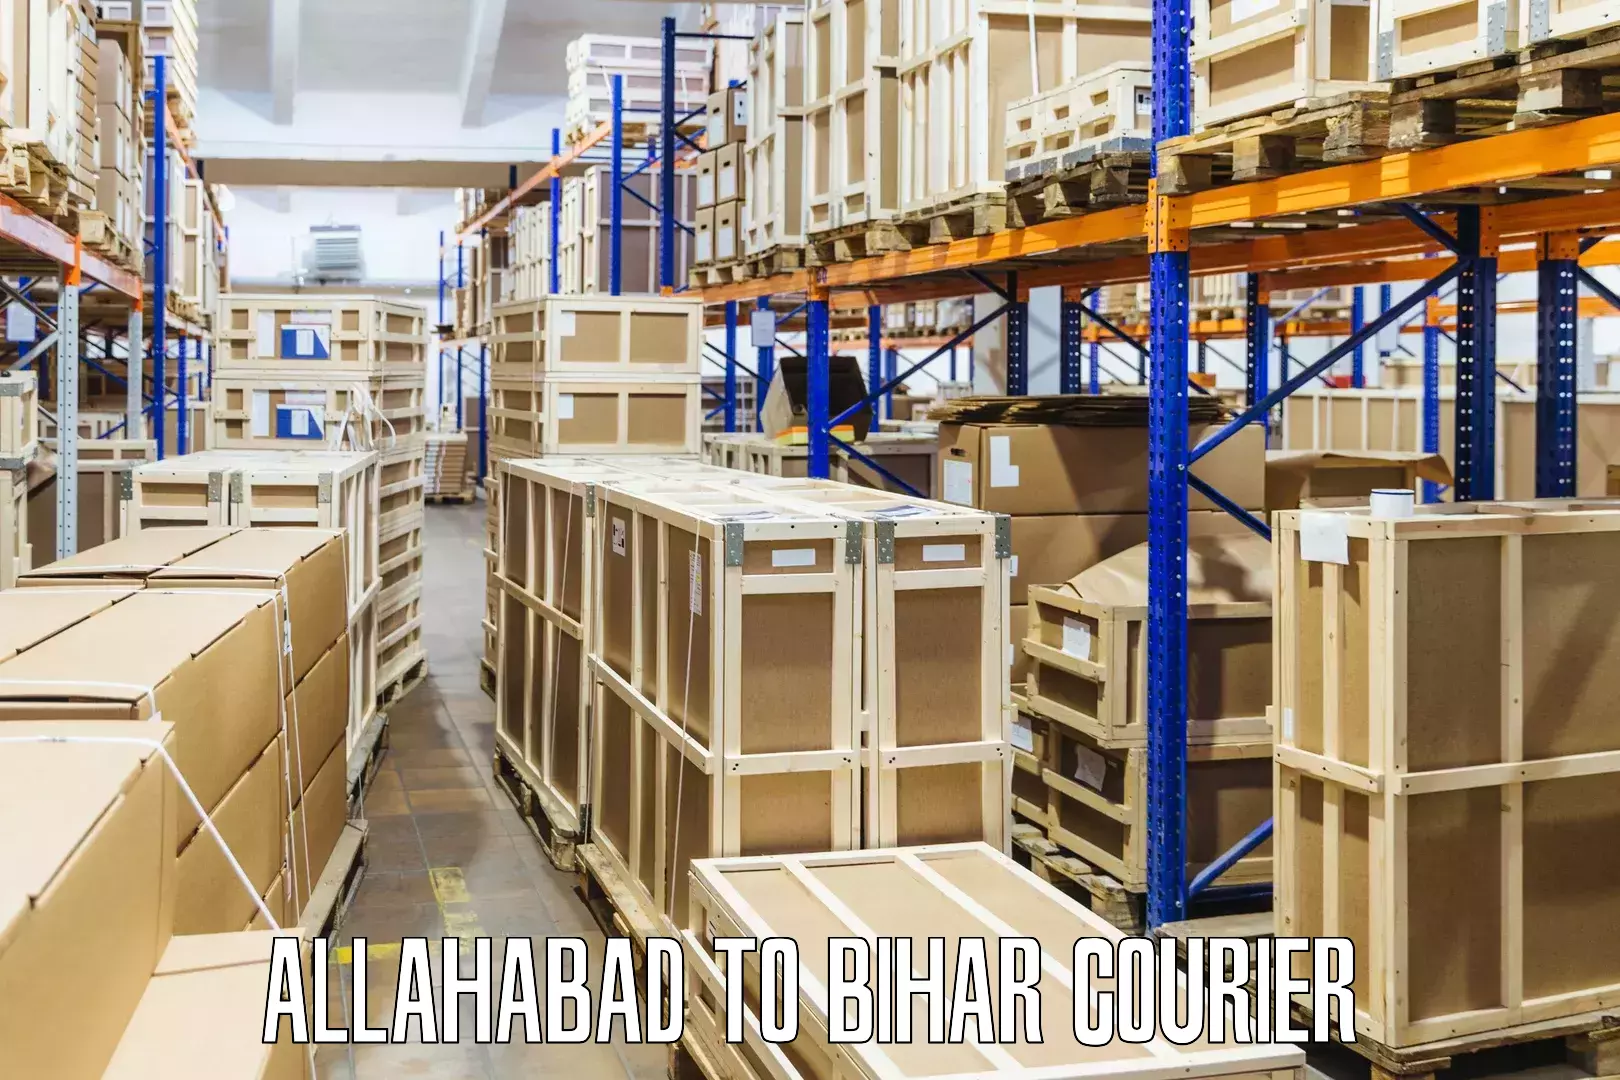 Door-to-door shipping Allahabad to Bihta